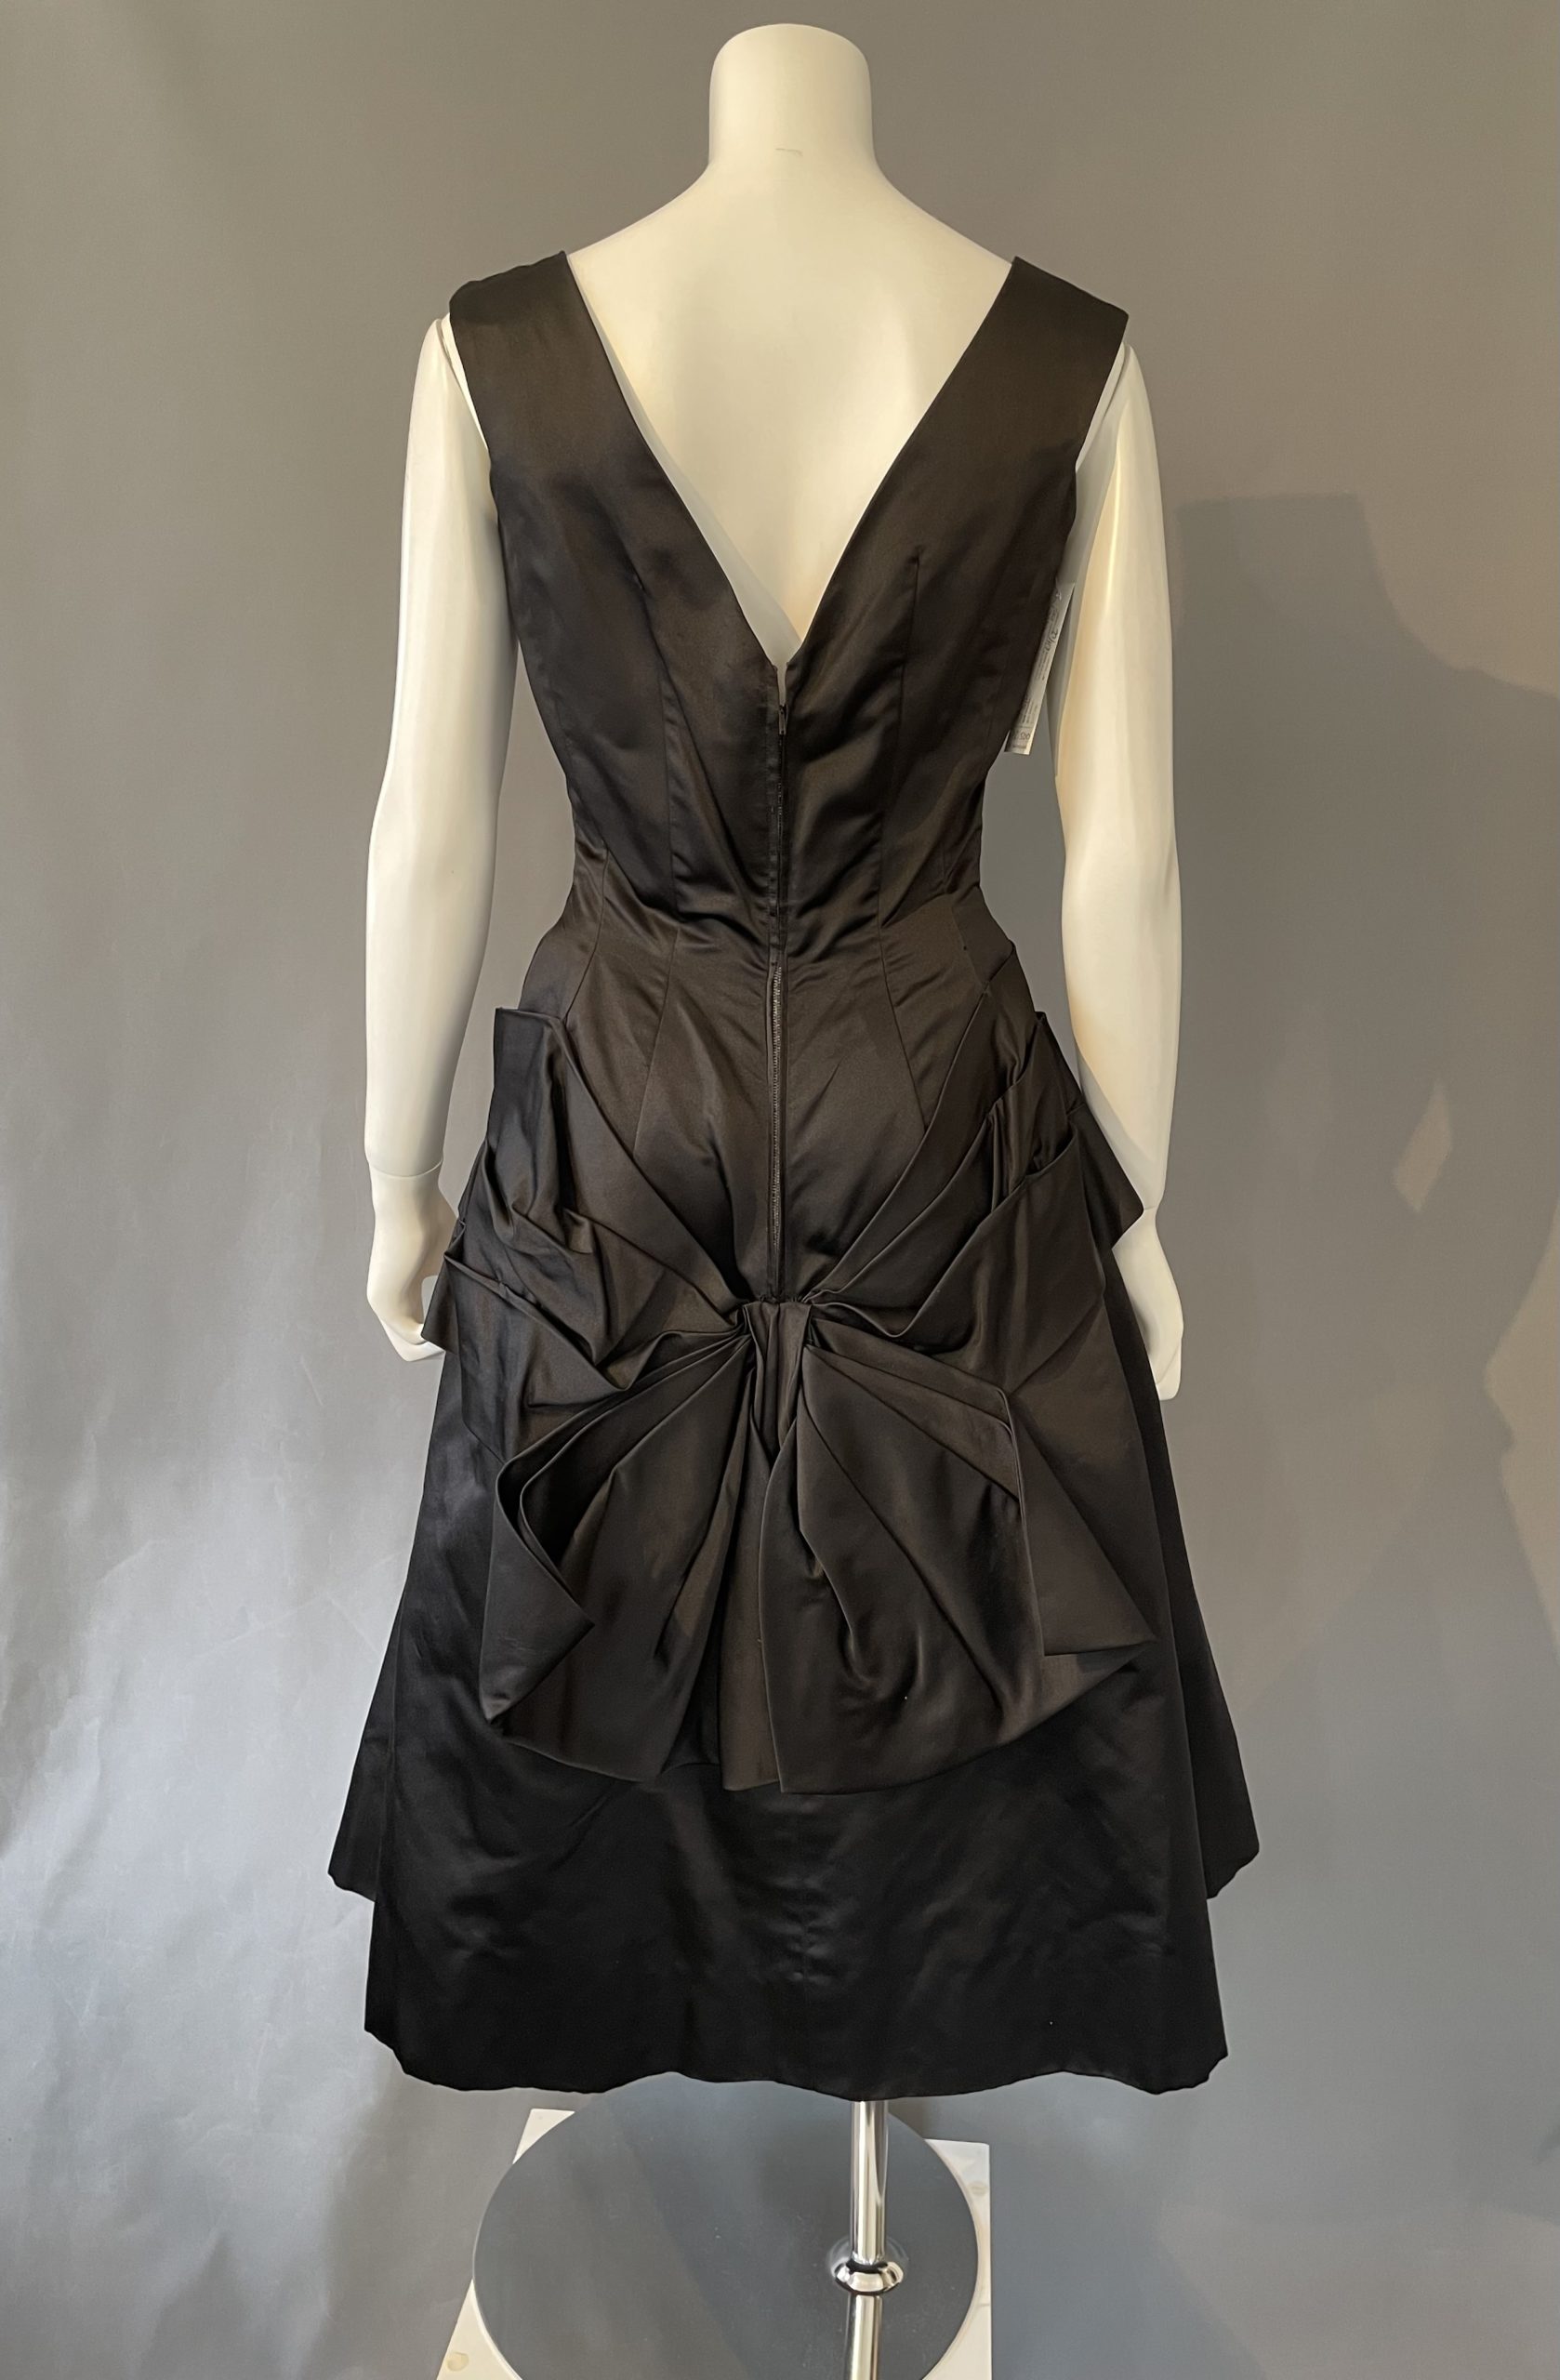 ビンテージ ブラック レーヨン サテン ドレス 黒 パーティー 1950年代